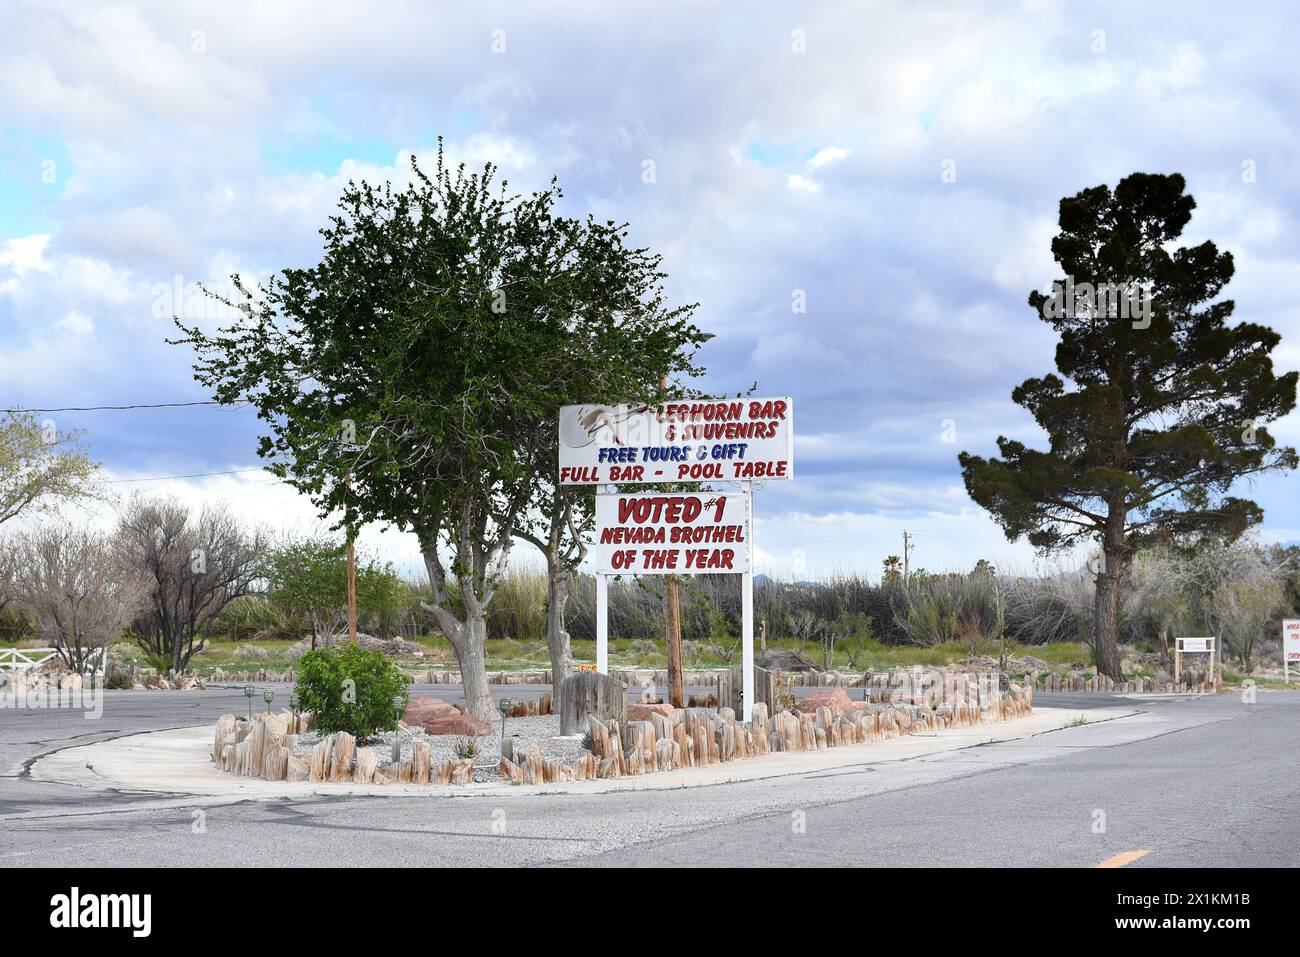 PAHRUMP, NEVADA - 14 avril 2024 : le panneau Chicken Ranch Leghorn Bar au bordel légal, autorisé situé à environ 60 miles à l'ouest de Las Vegas Banque D'Images